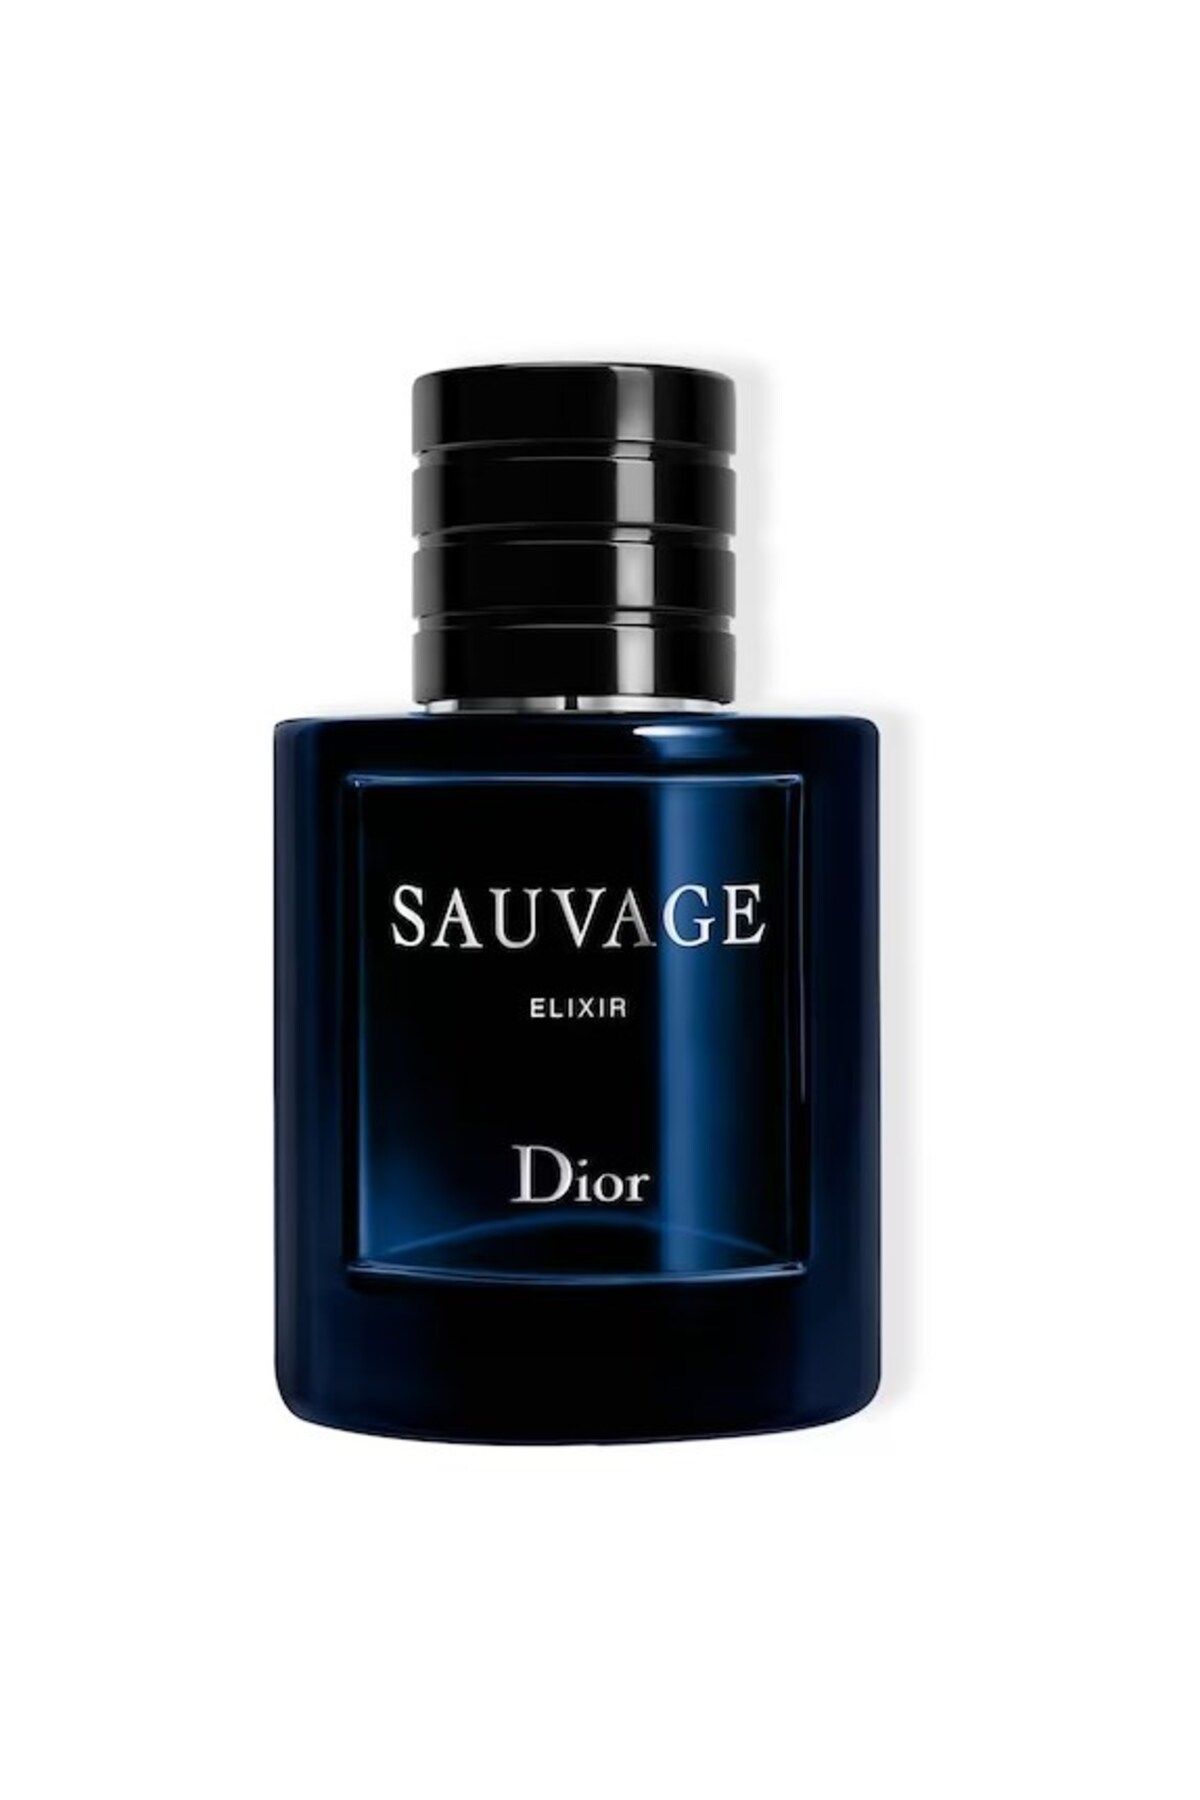 Dior Sauvage Elixir Keşfedilmemiş Toprakları Keşfeden 100 Ml